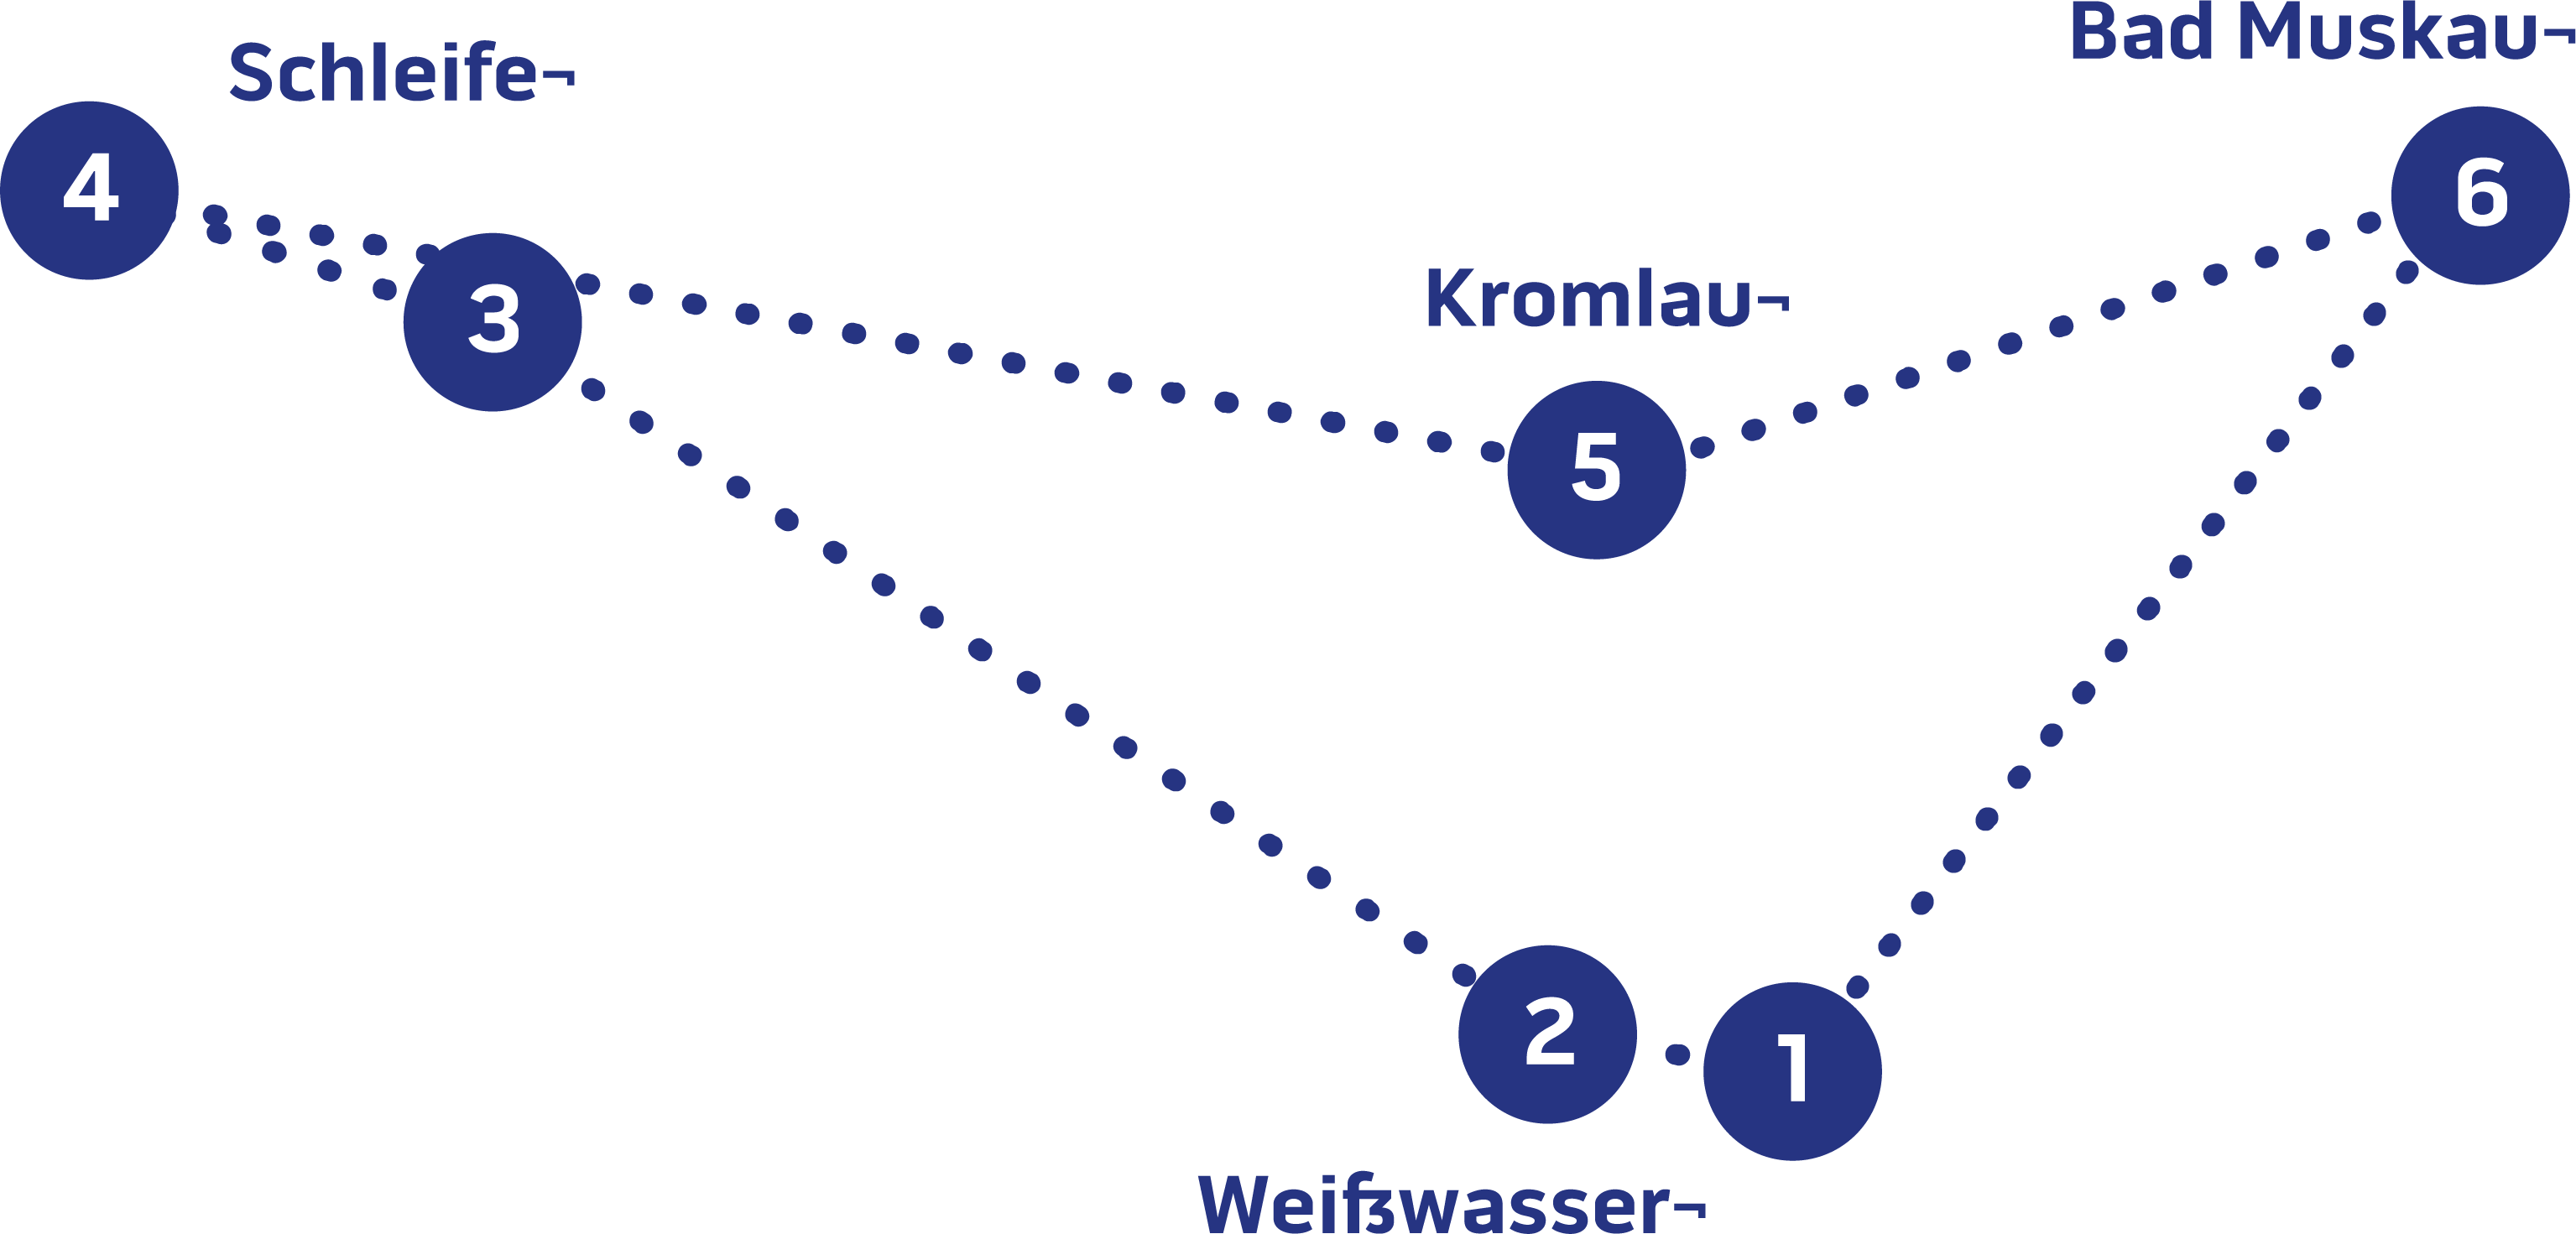 6 nummerierte Punkte, die über eine Punktlinie verbunden sind als Routendarstellung von Weißwasser über Schleife, Kromlau nach Bad Muskau